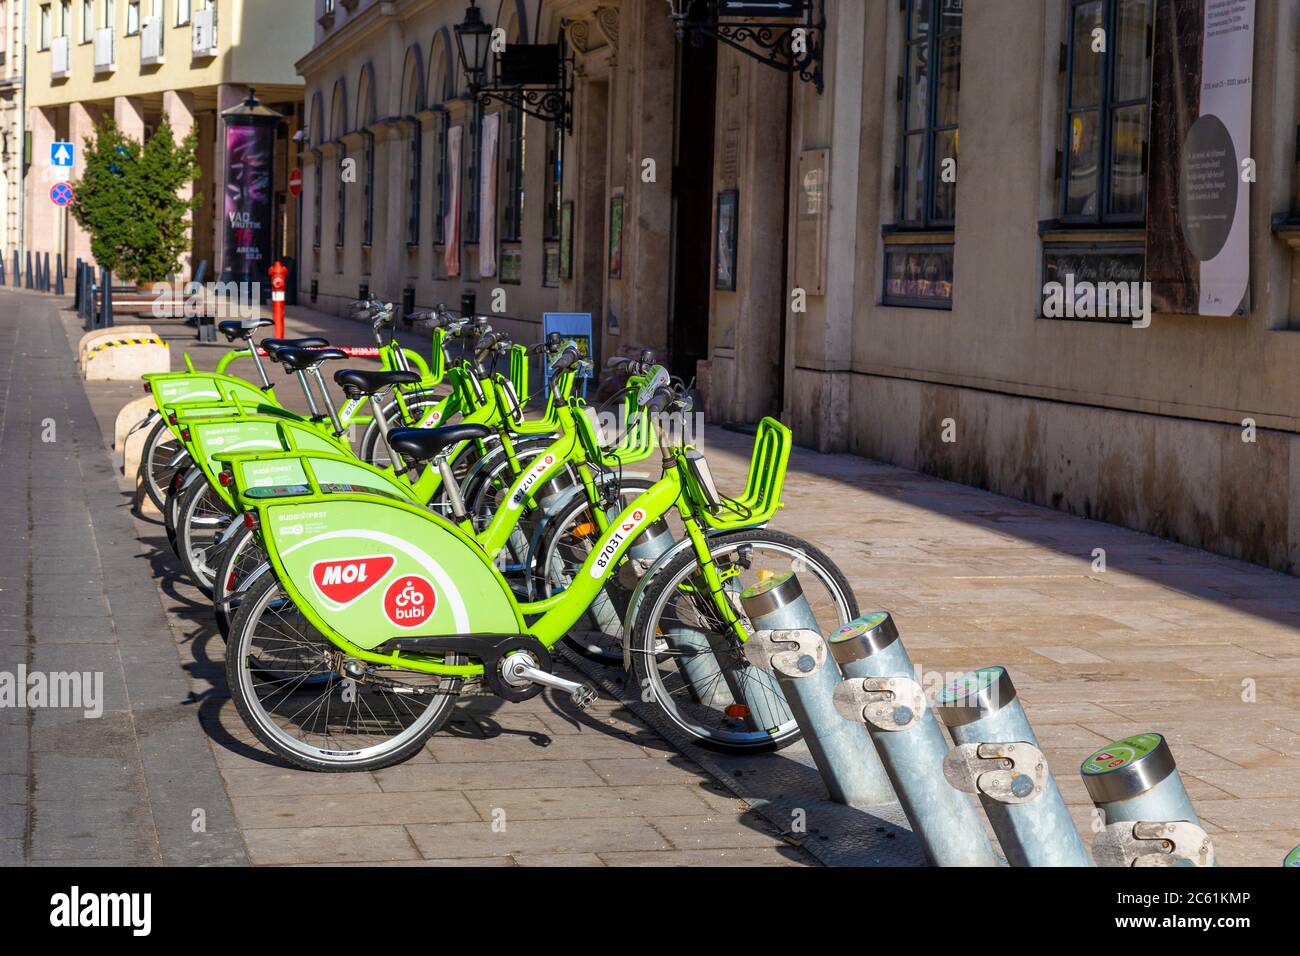 RÉSEAU DE partage DE vélos MOL 'Bubi' bicyclettes amarrées dans une rue, Budapest, Hongrie Banque D'Images